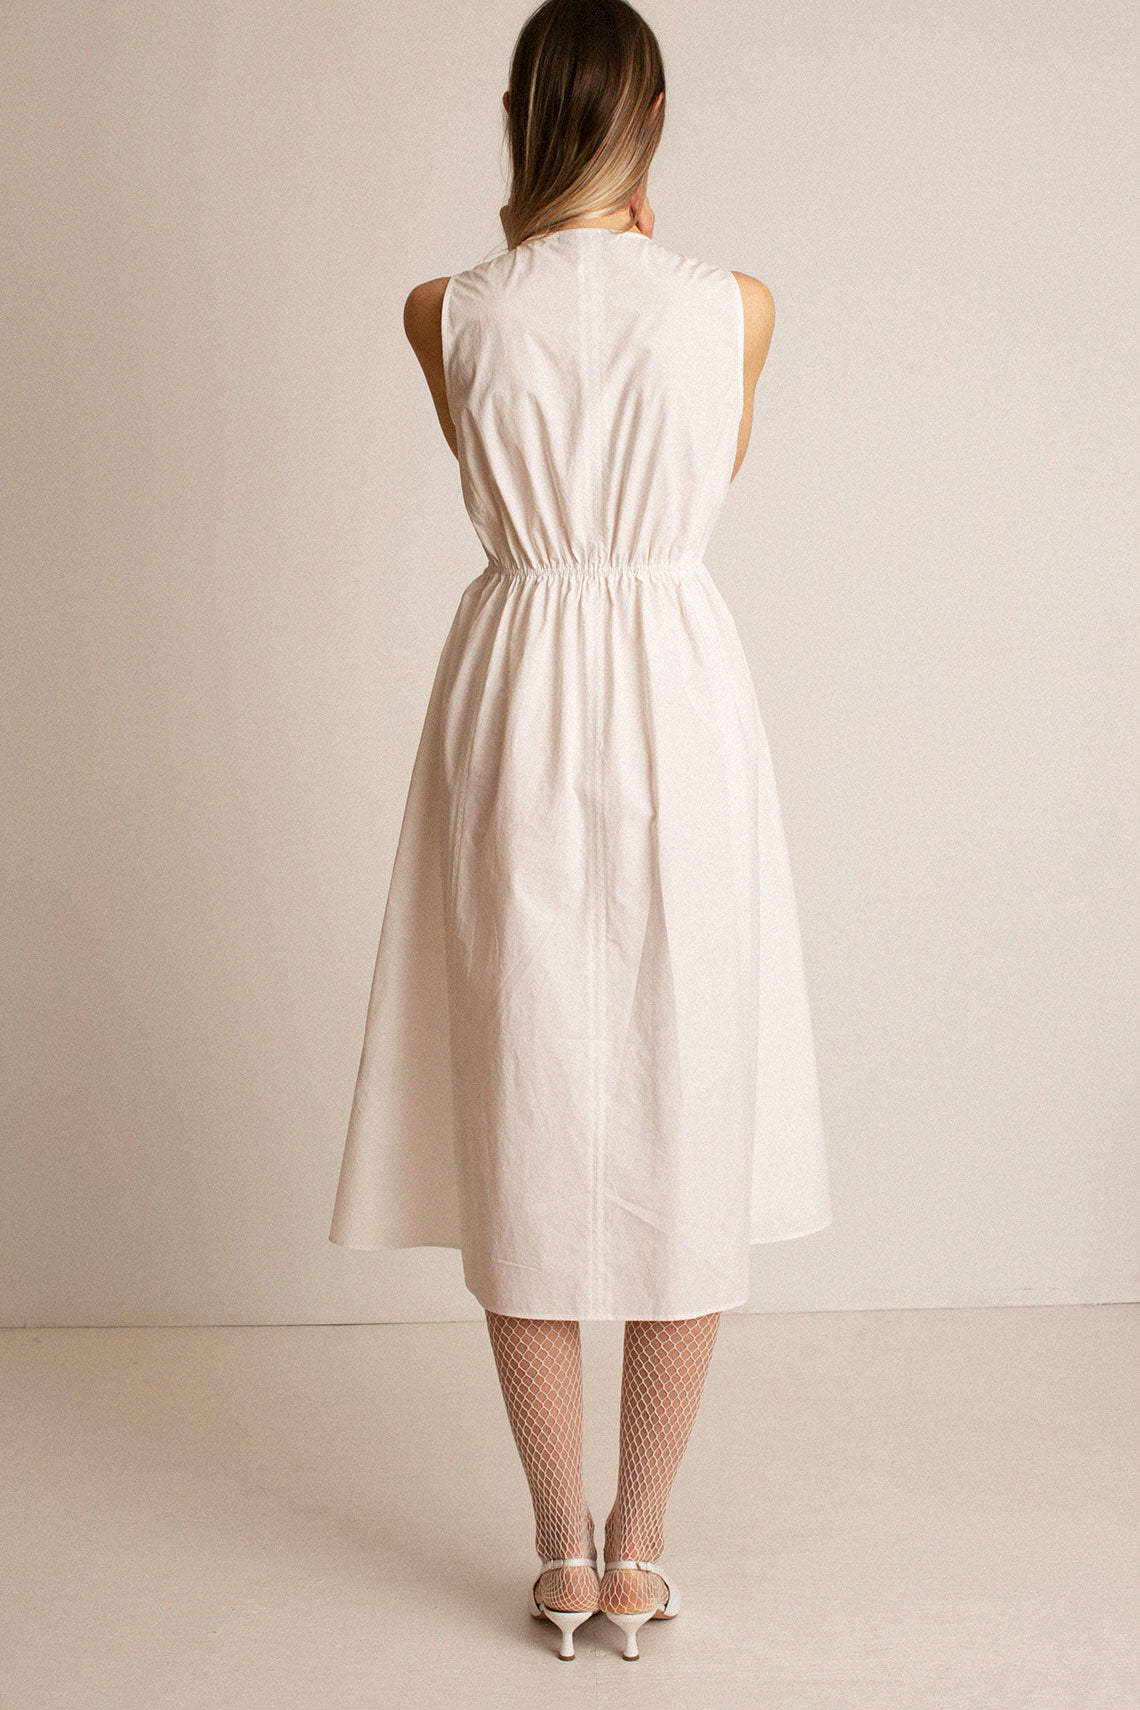 White Mercer Dress